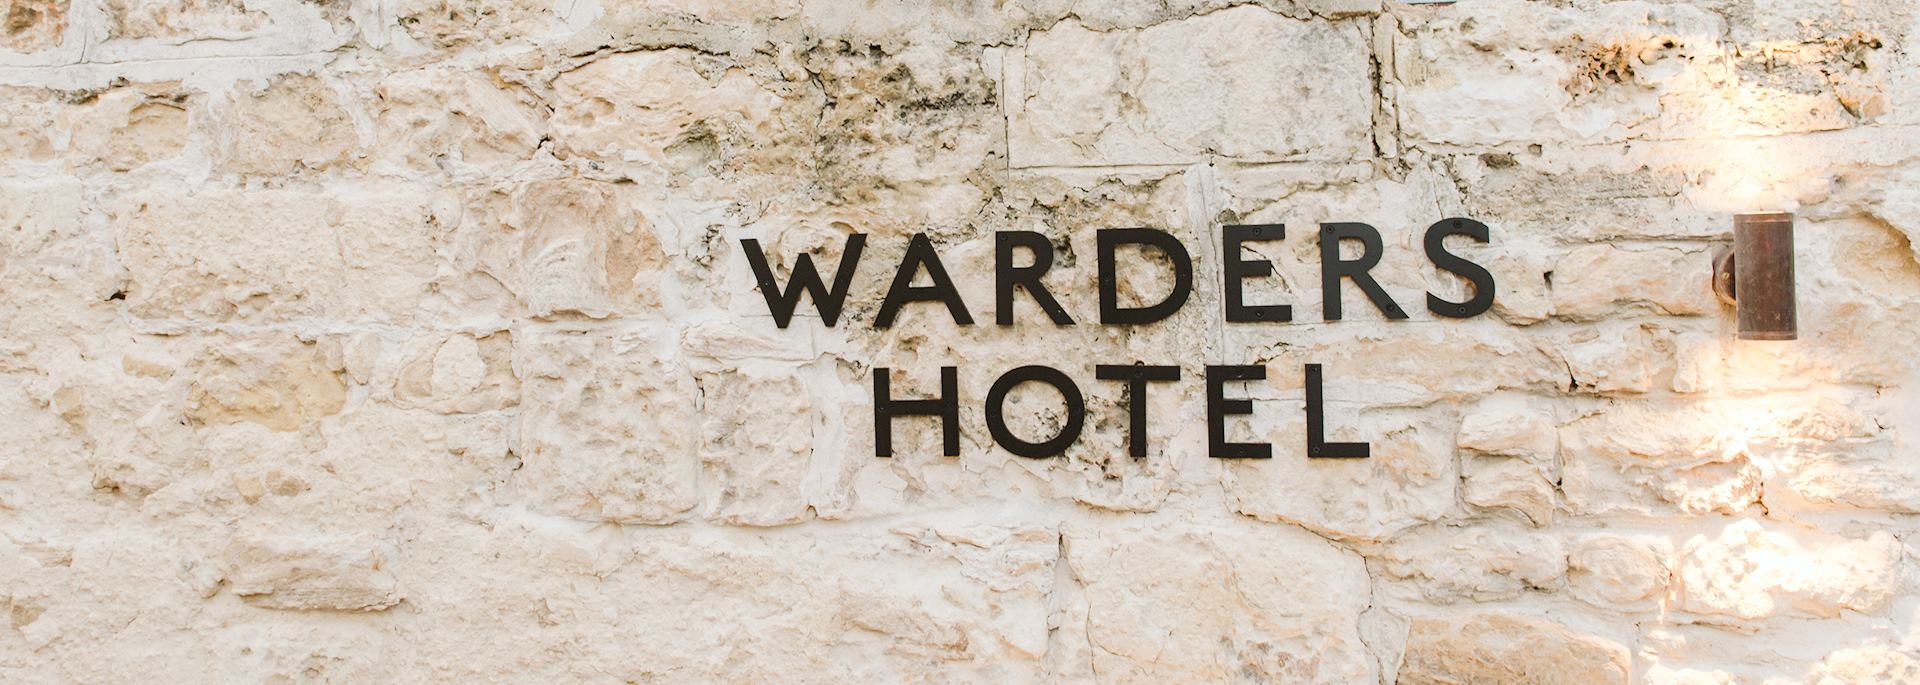 Warders Hotel